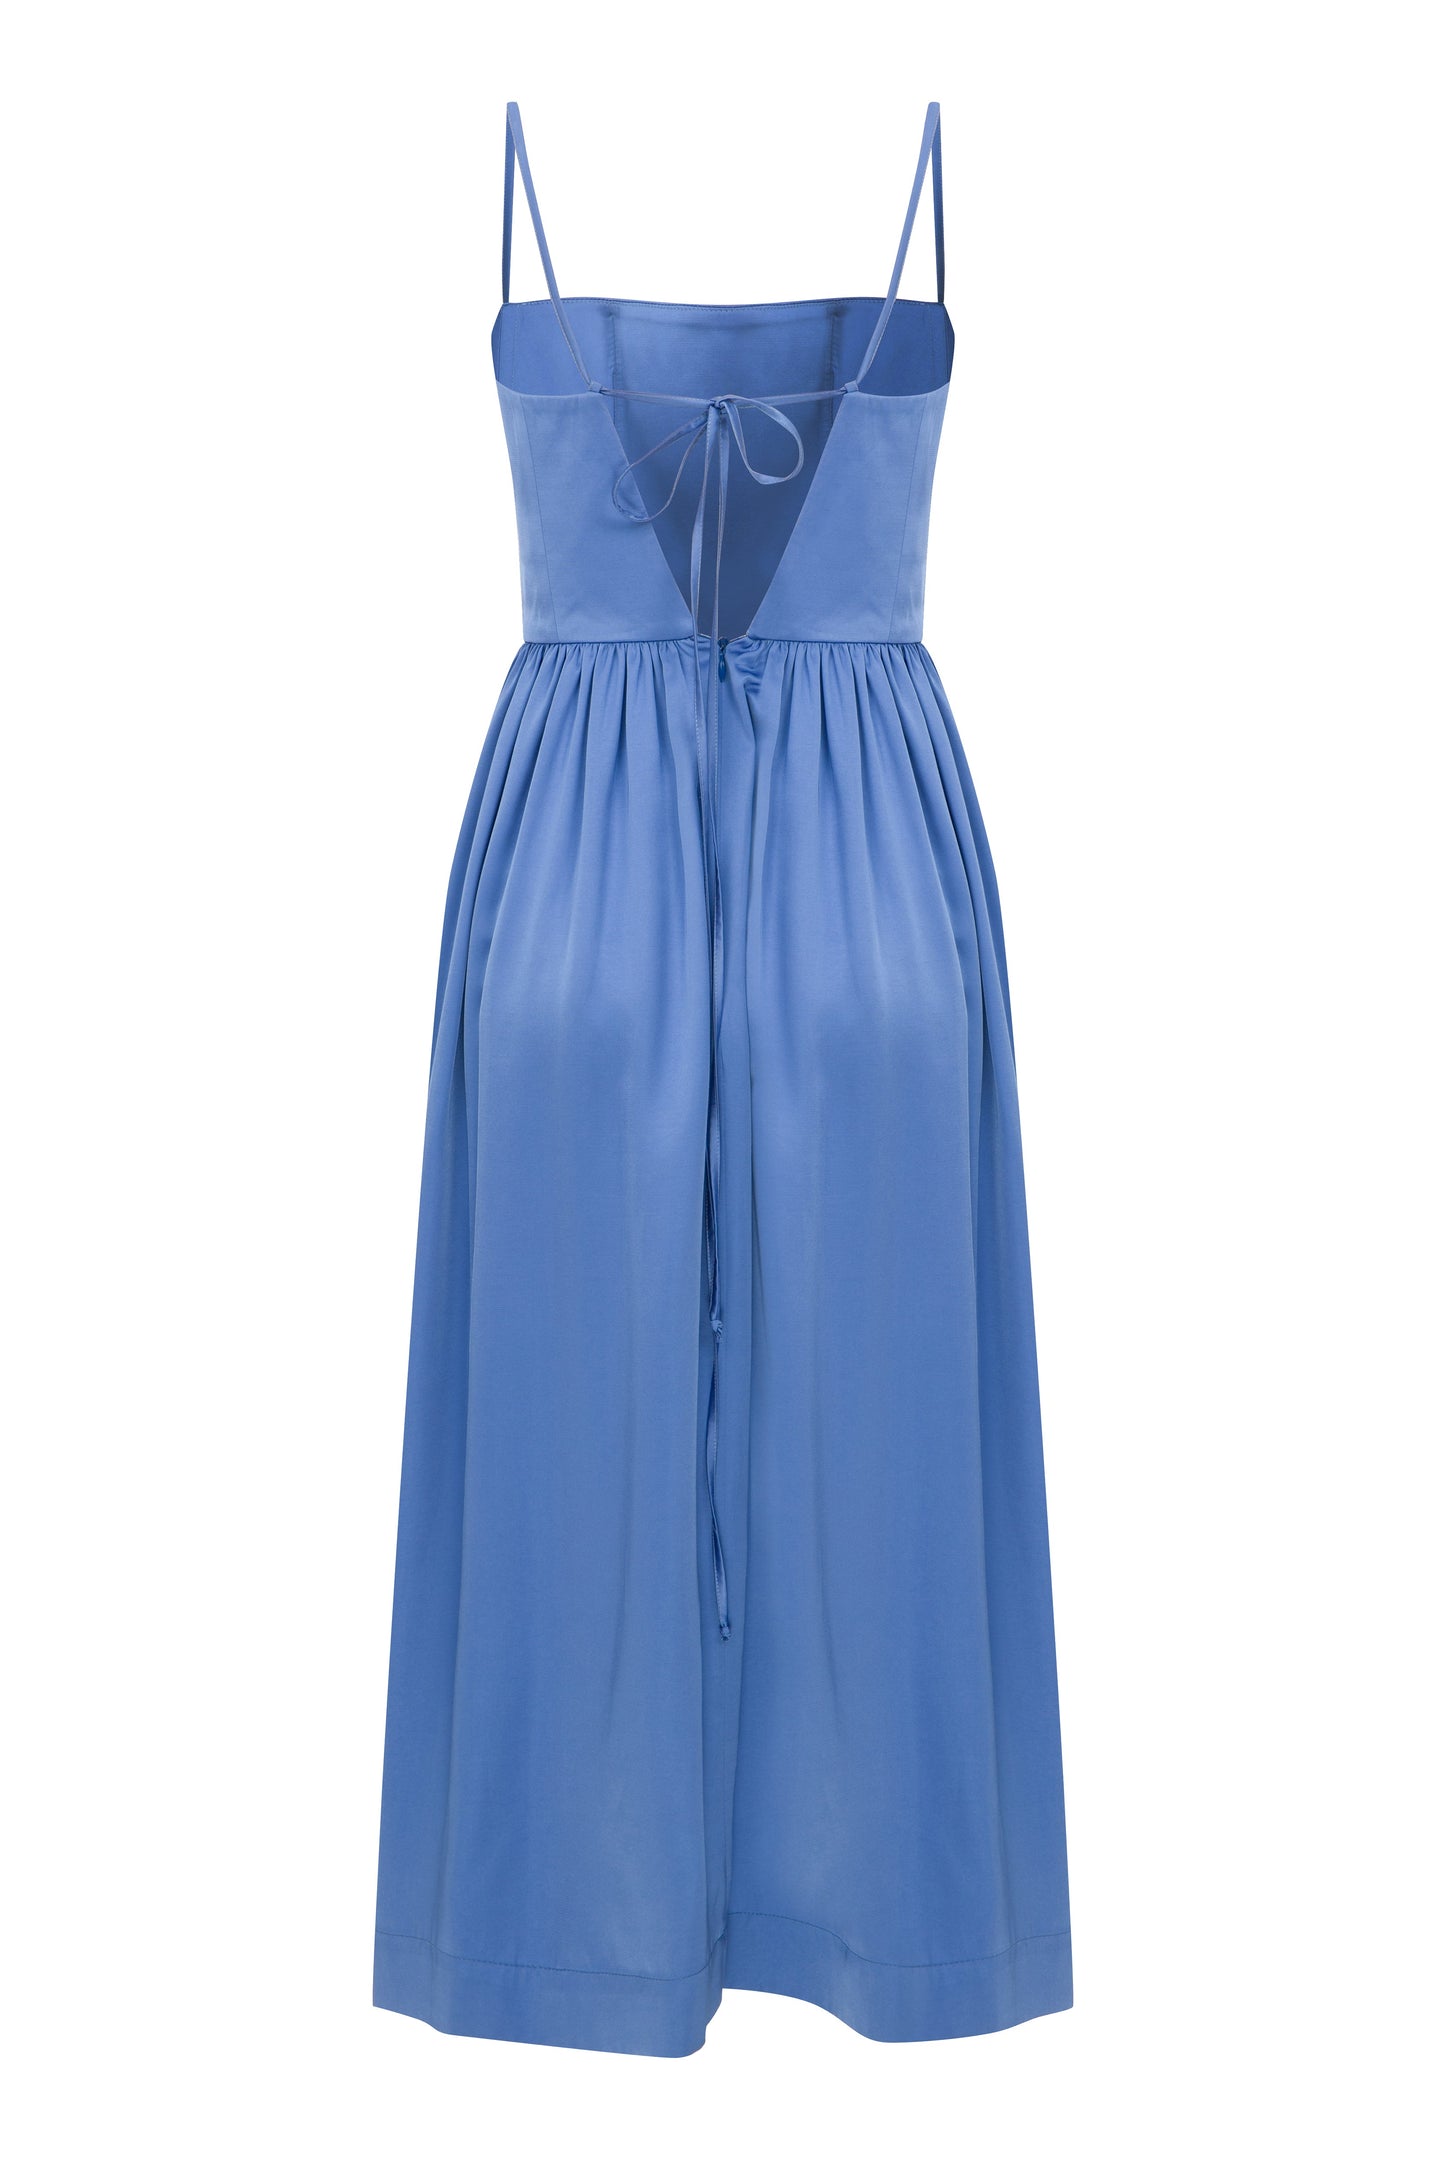 Liette Satin Midi Dress in Ultramarine